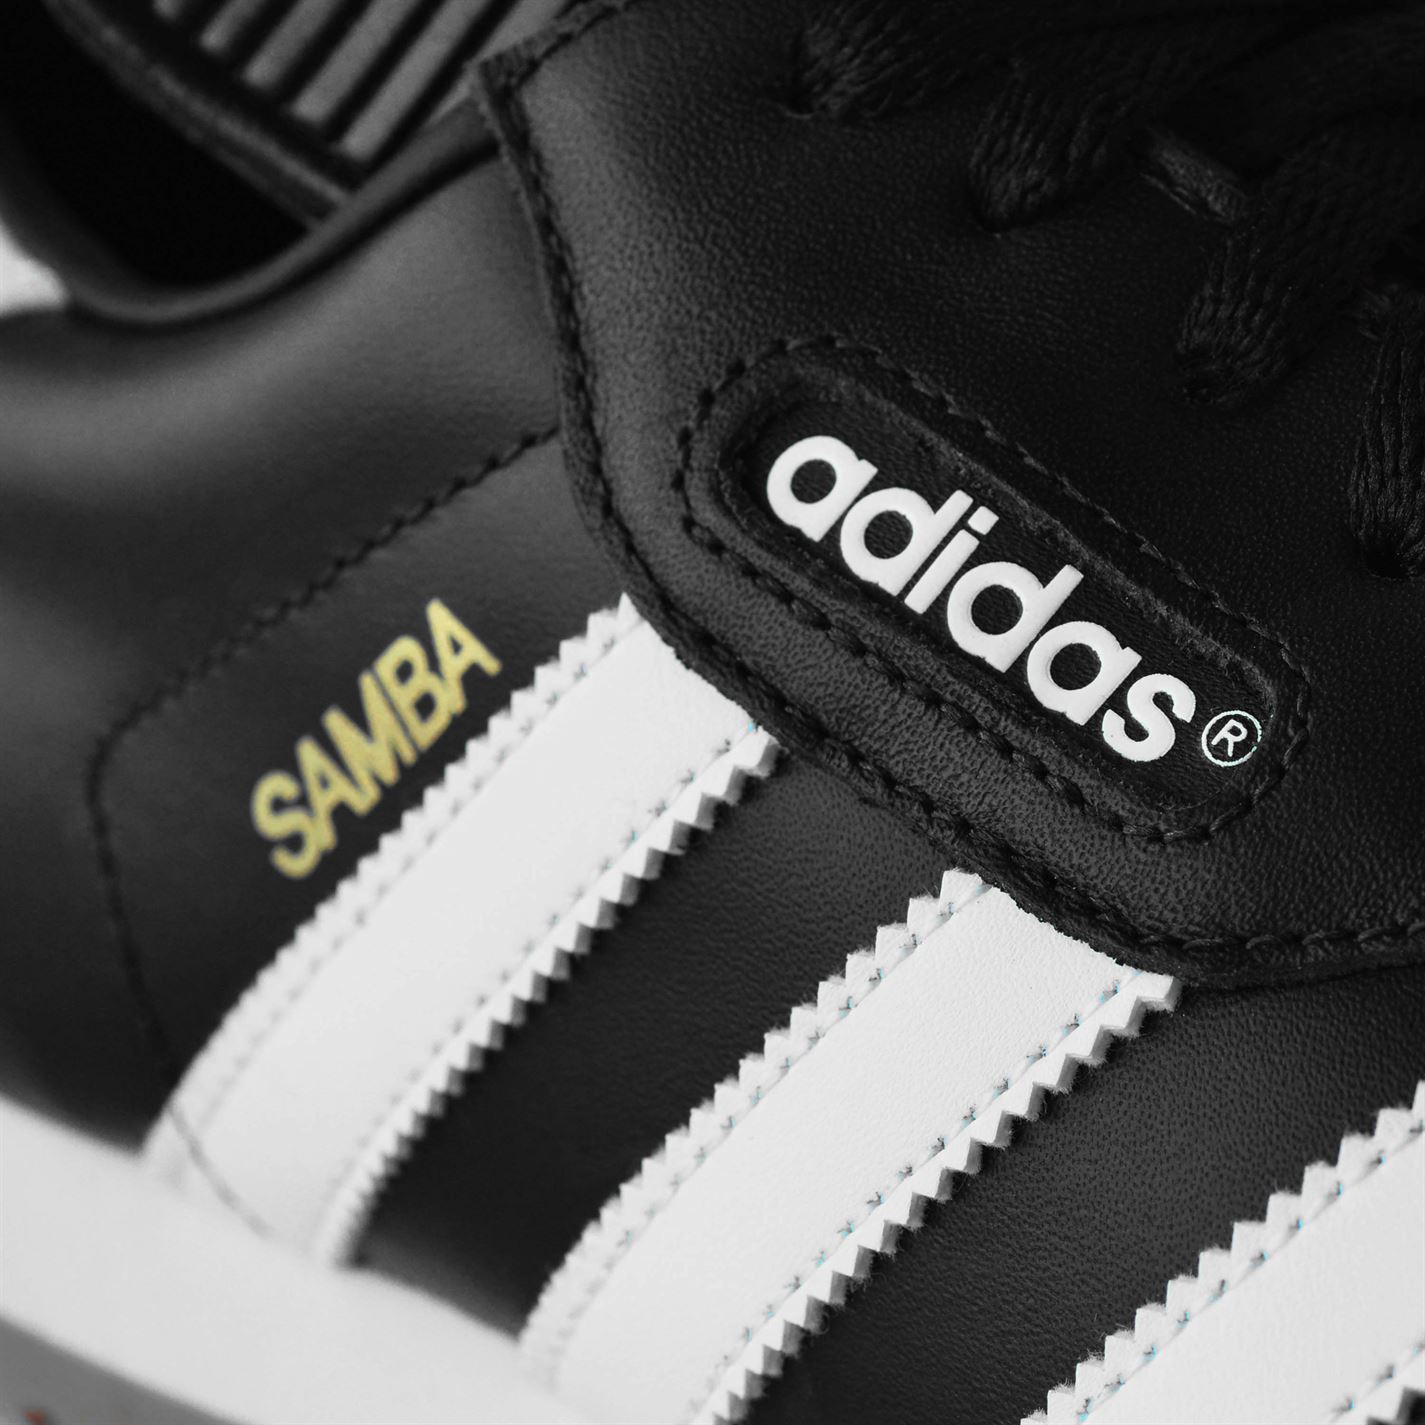 Версии адидас. Adidas Samba super. Adidas Samba язычок. Adidas Samba с тройным язычком. Adidas Version 3.